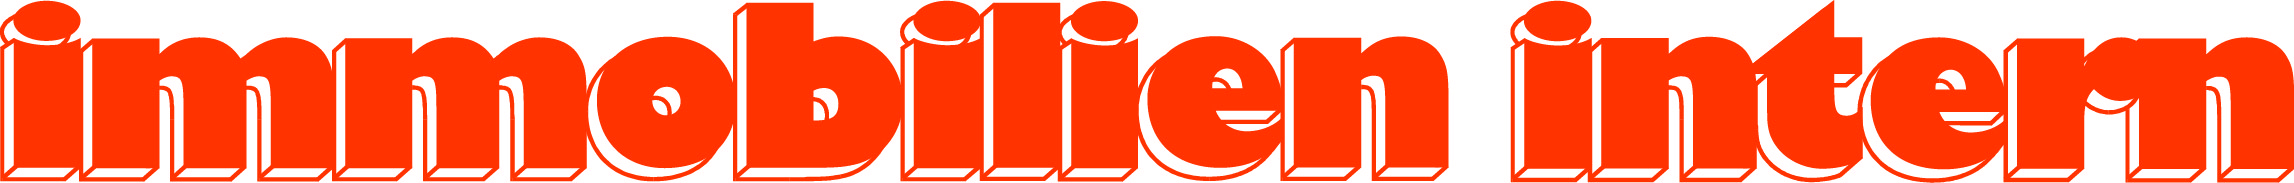 logo-immorot1c.jpg